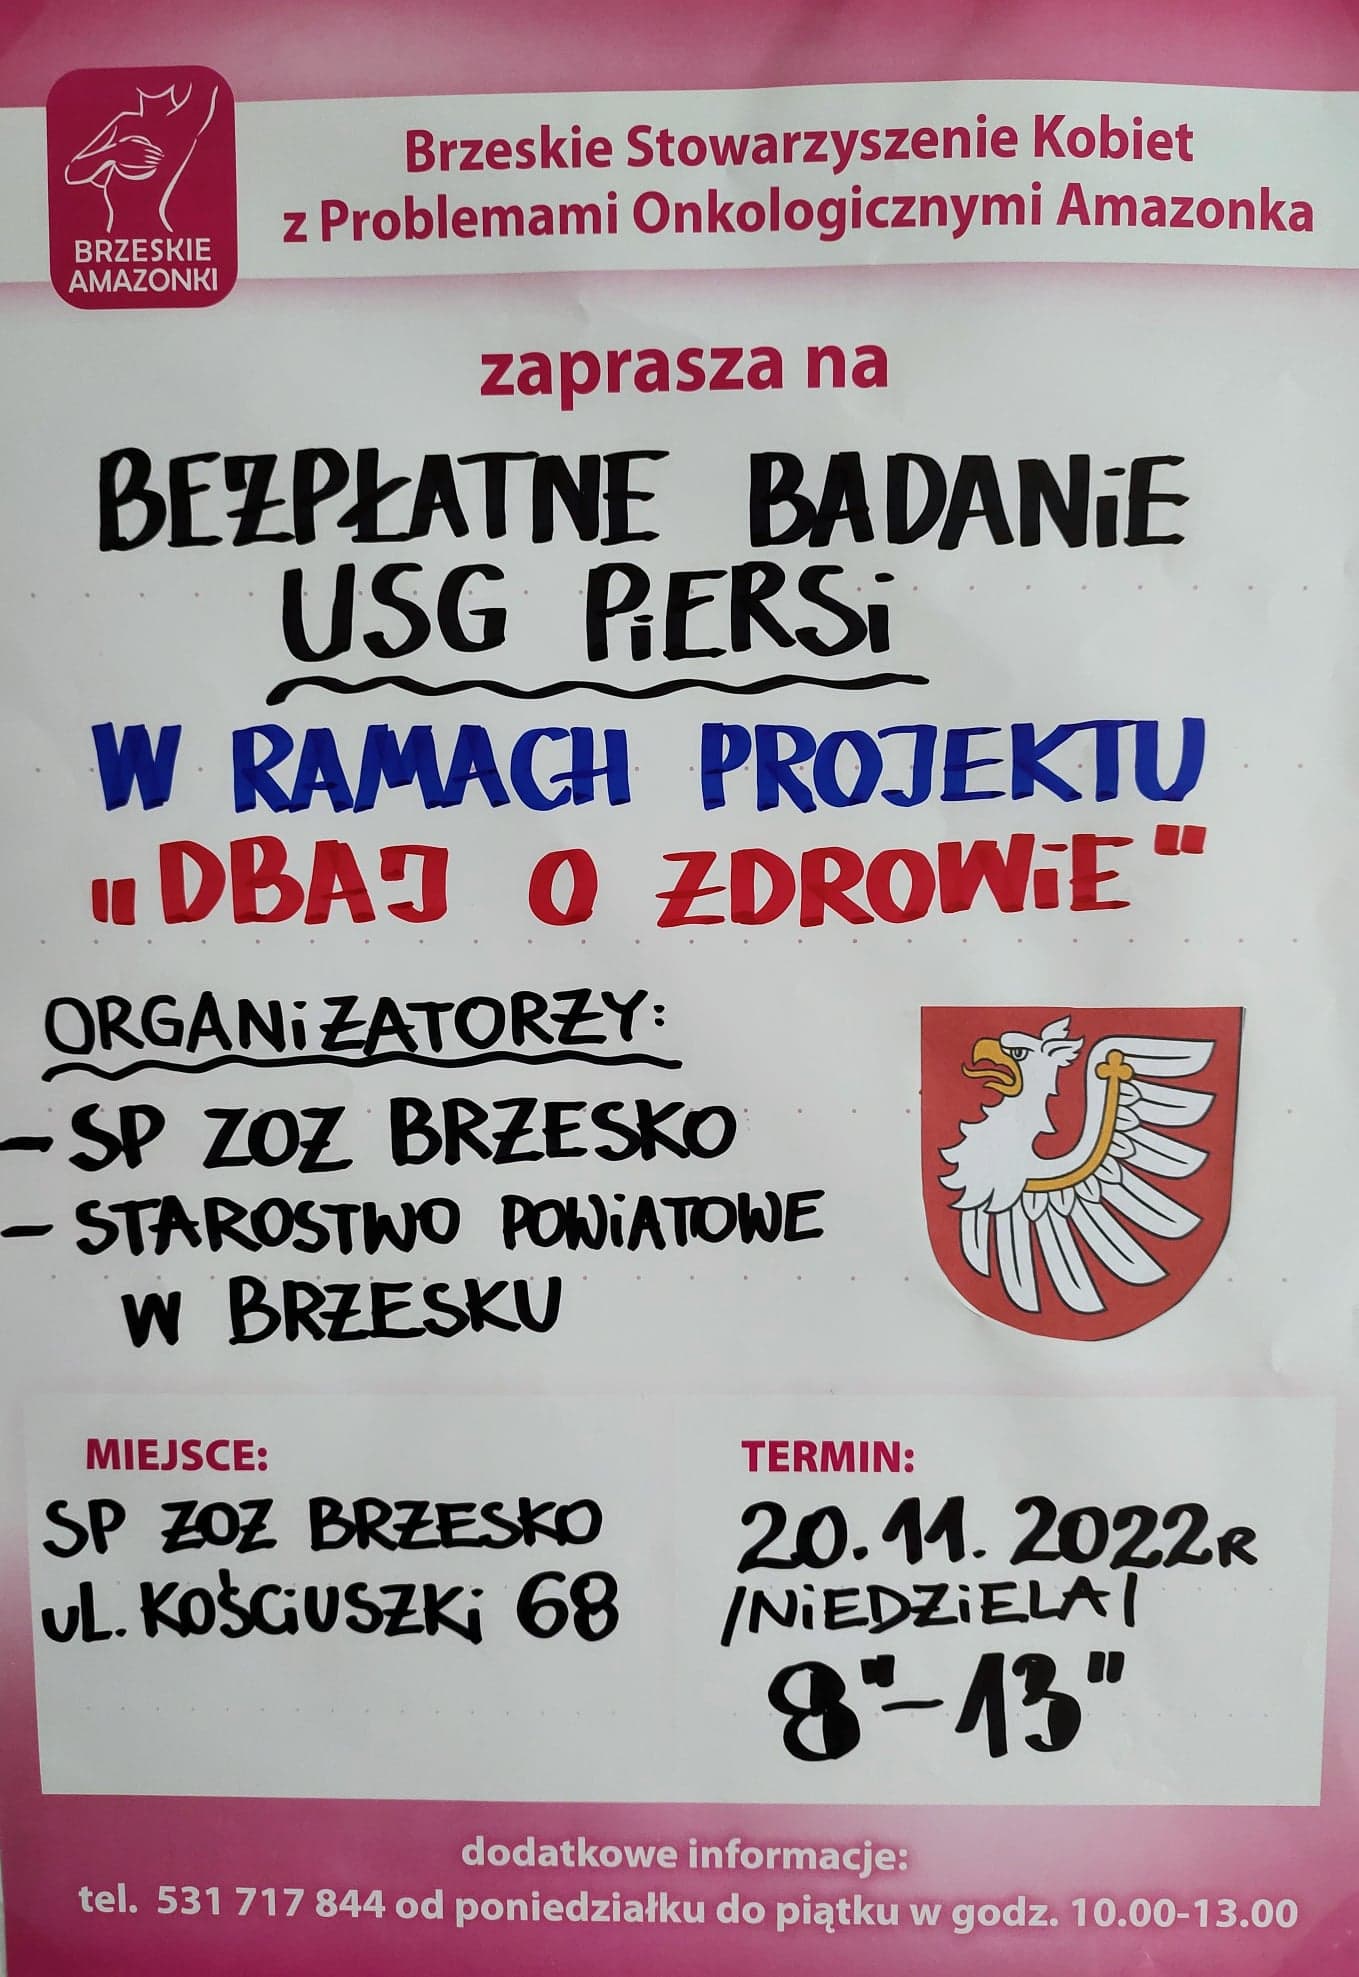 plakat z informacjami na temat bezpłatnego USG